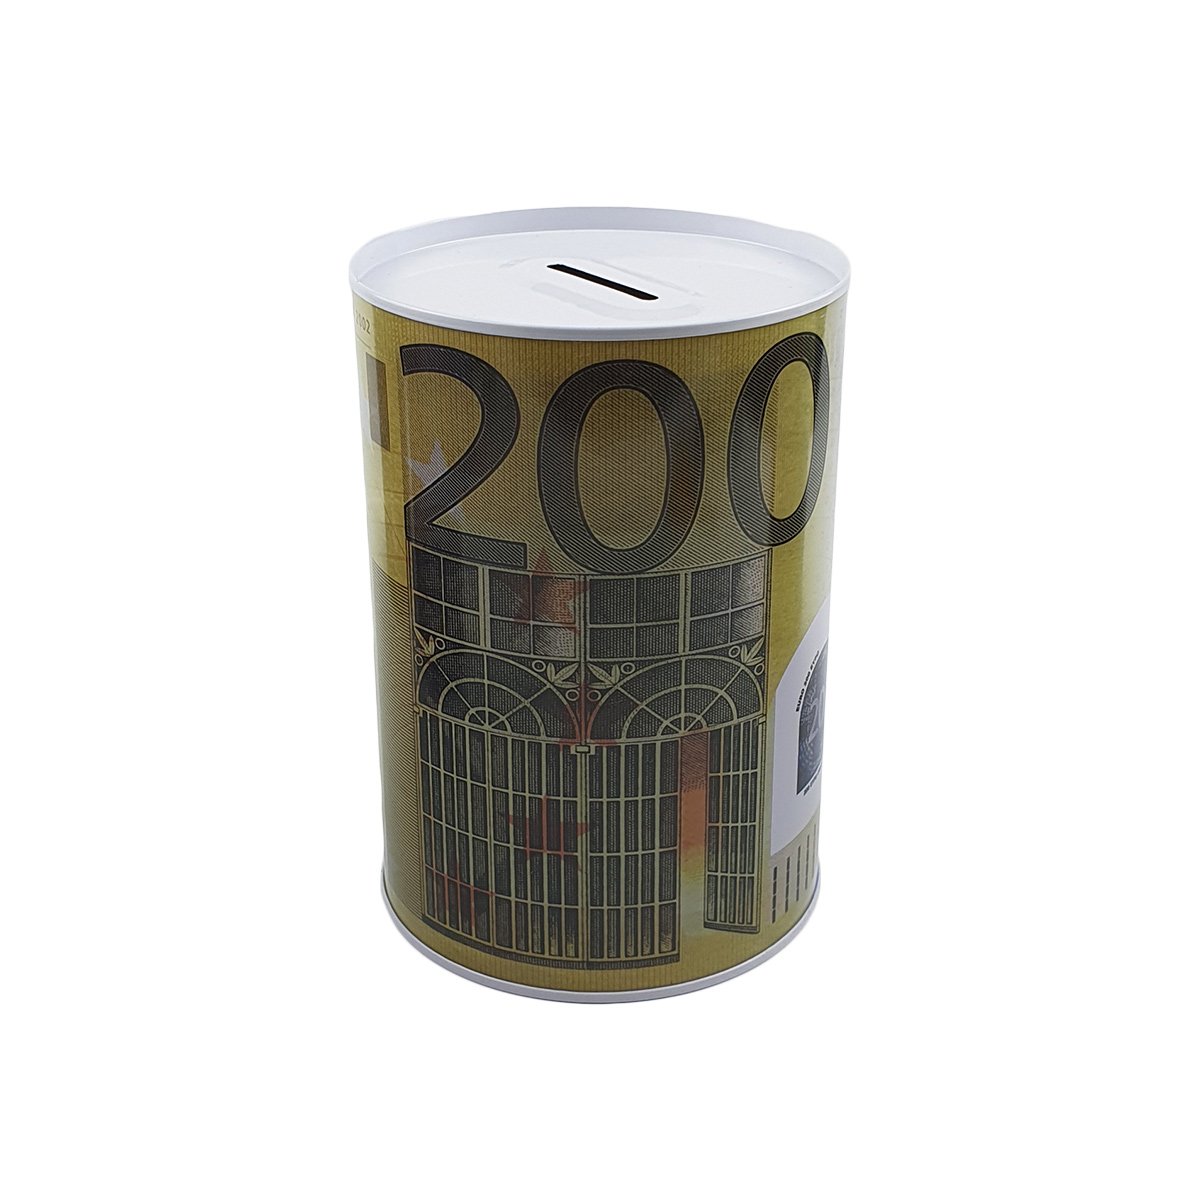 TIRELIRE BOITE MÉTALLIQUE cylindrique 500 Euros 149. Années 2000 - Money  Bank. EUR 19,56 - PicClick FR